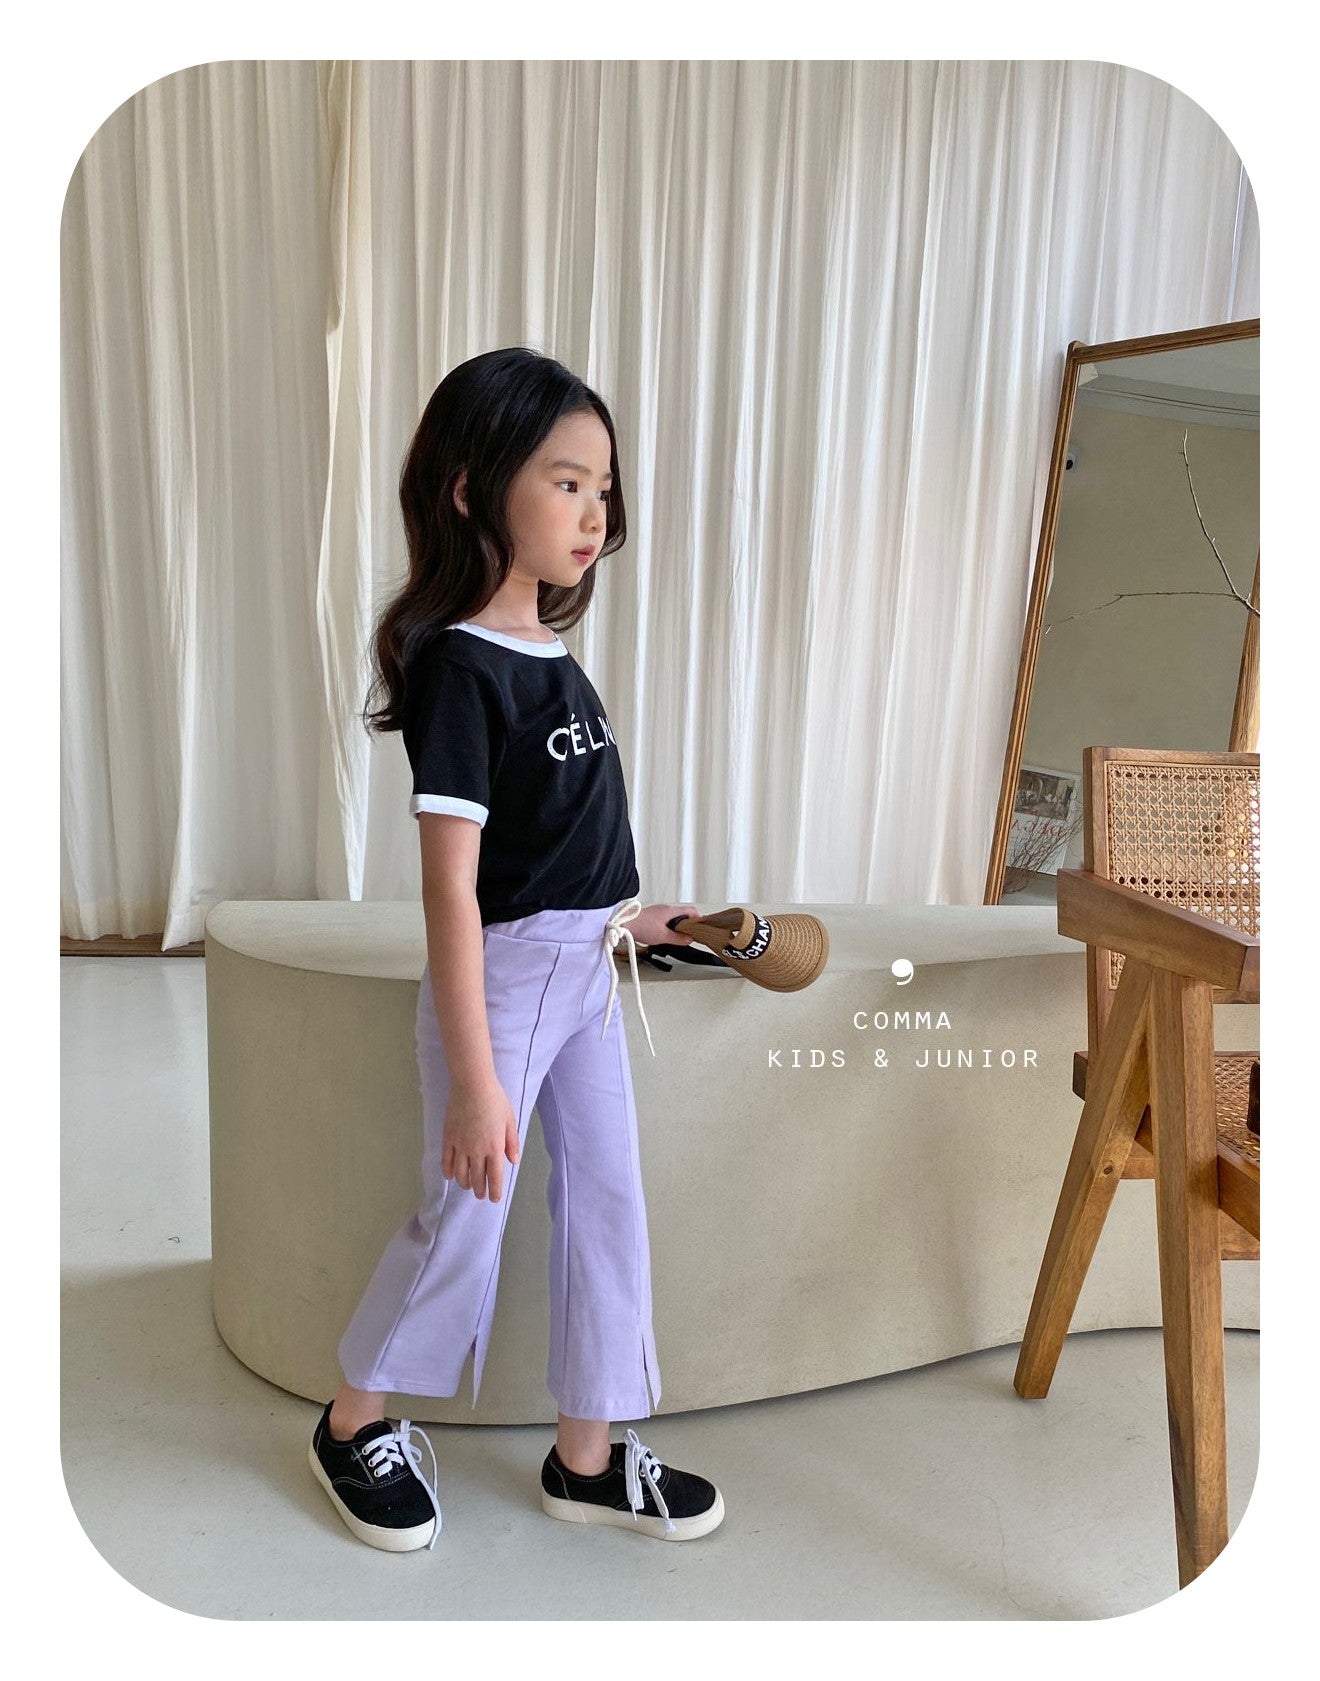 【注文後取り寄せ】韓国子供服 Comma 女の子 子供服 ブーツカットパンツ 2色 80-150サイズ